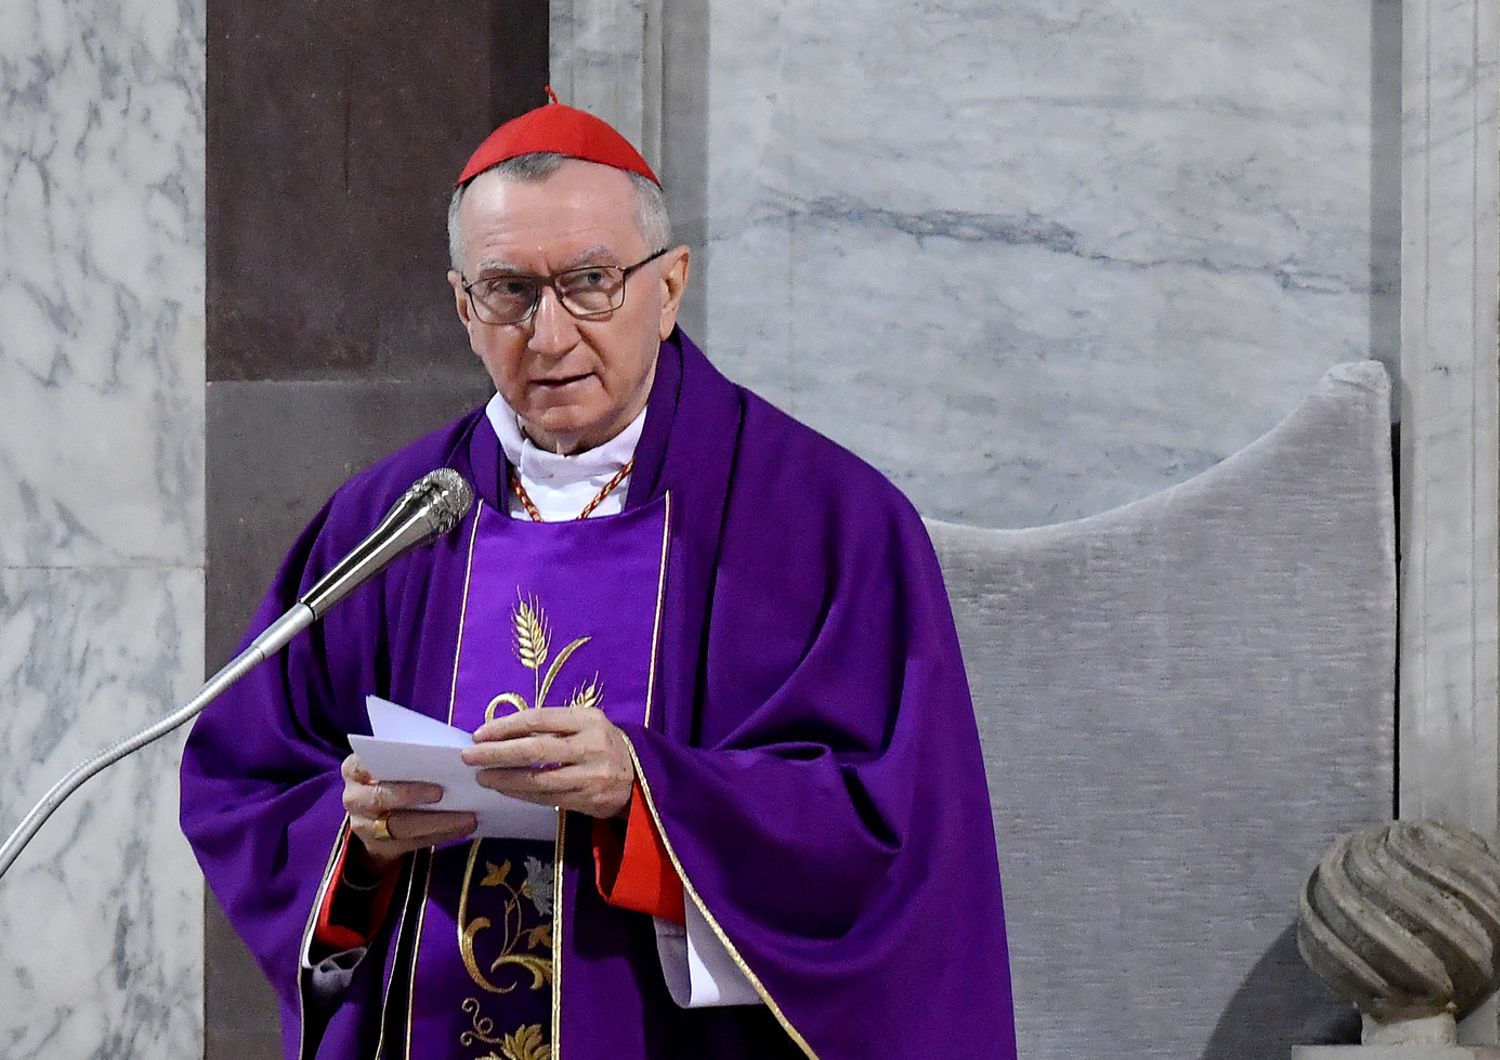 Il segretario di Stato vaticano, il cardinale Pietro Parolin